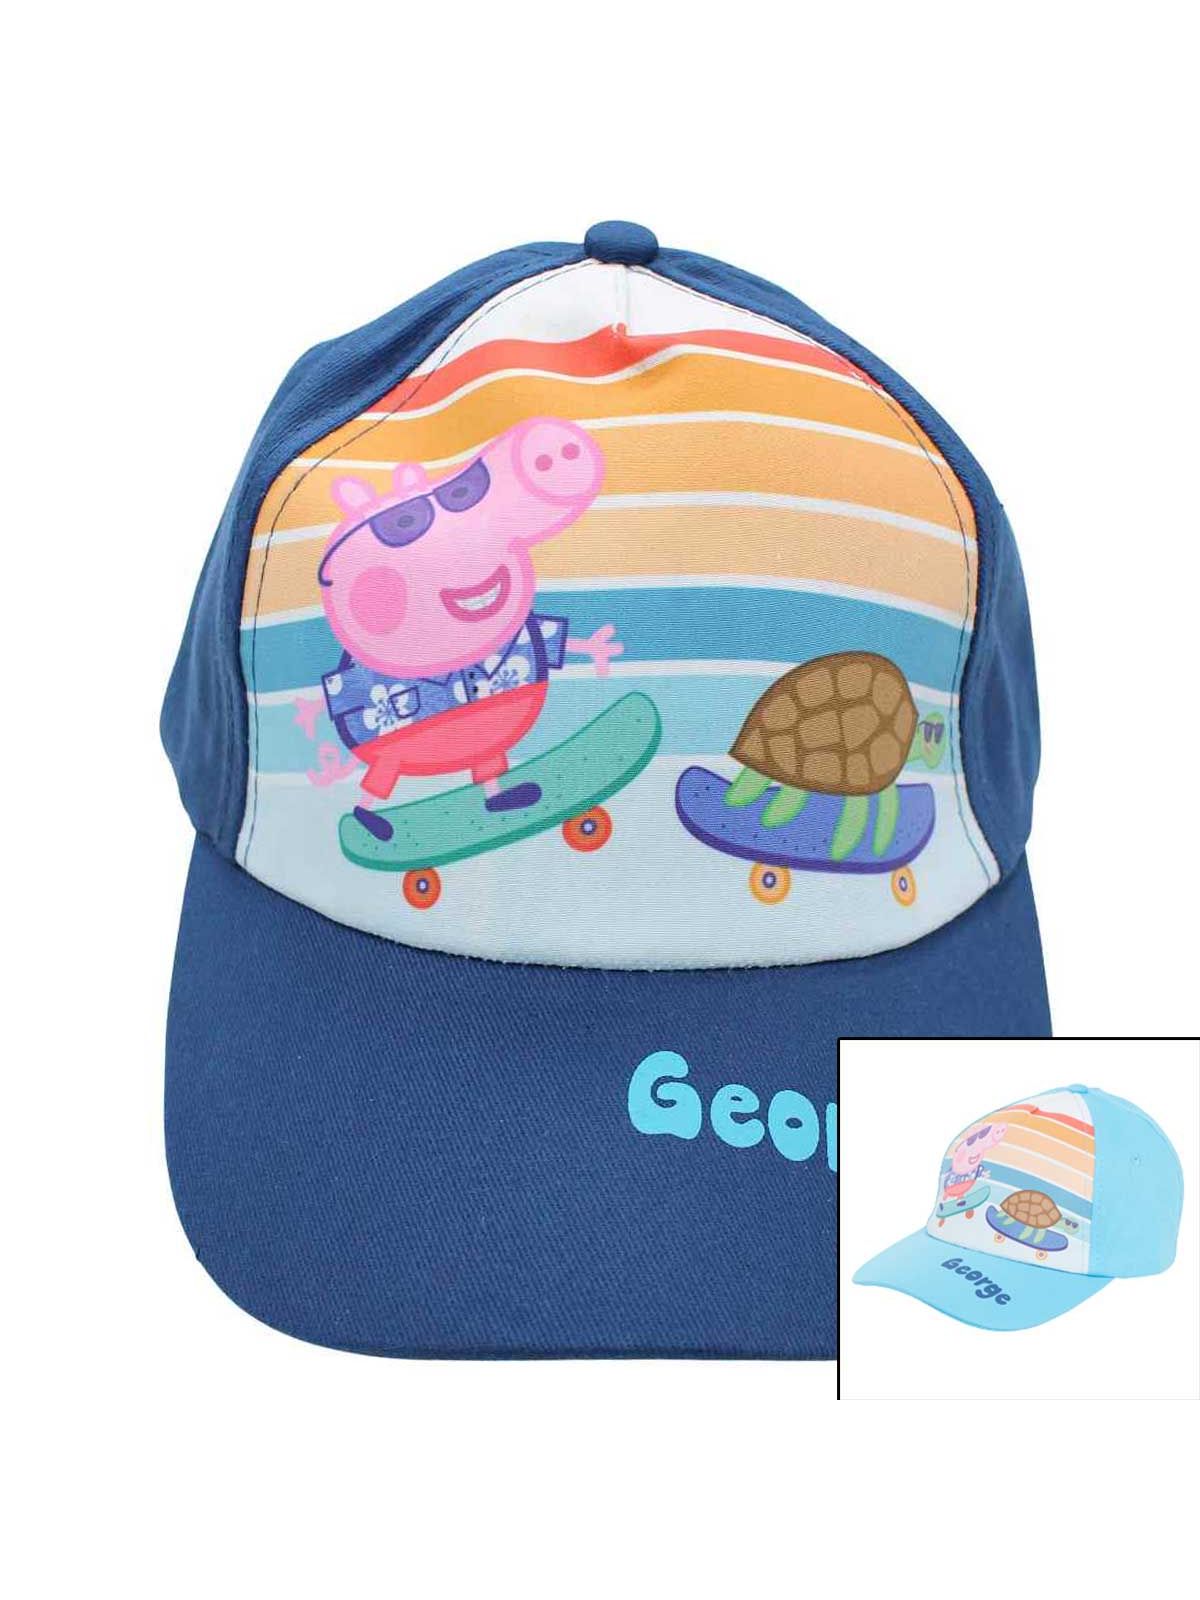 Peppa Pig Cap with visor